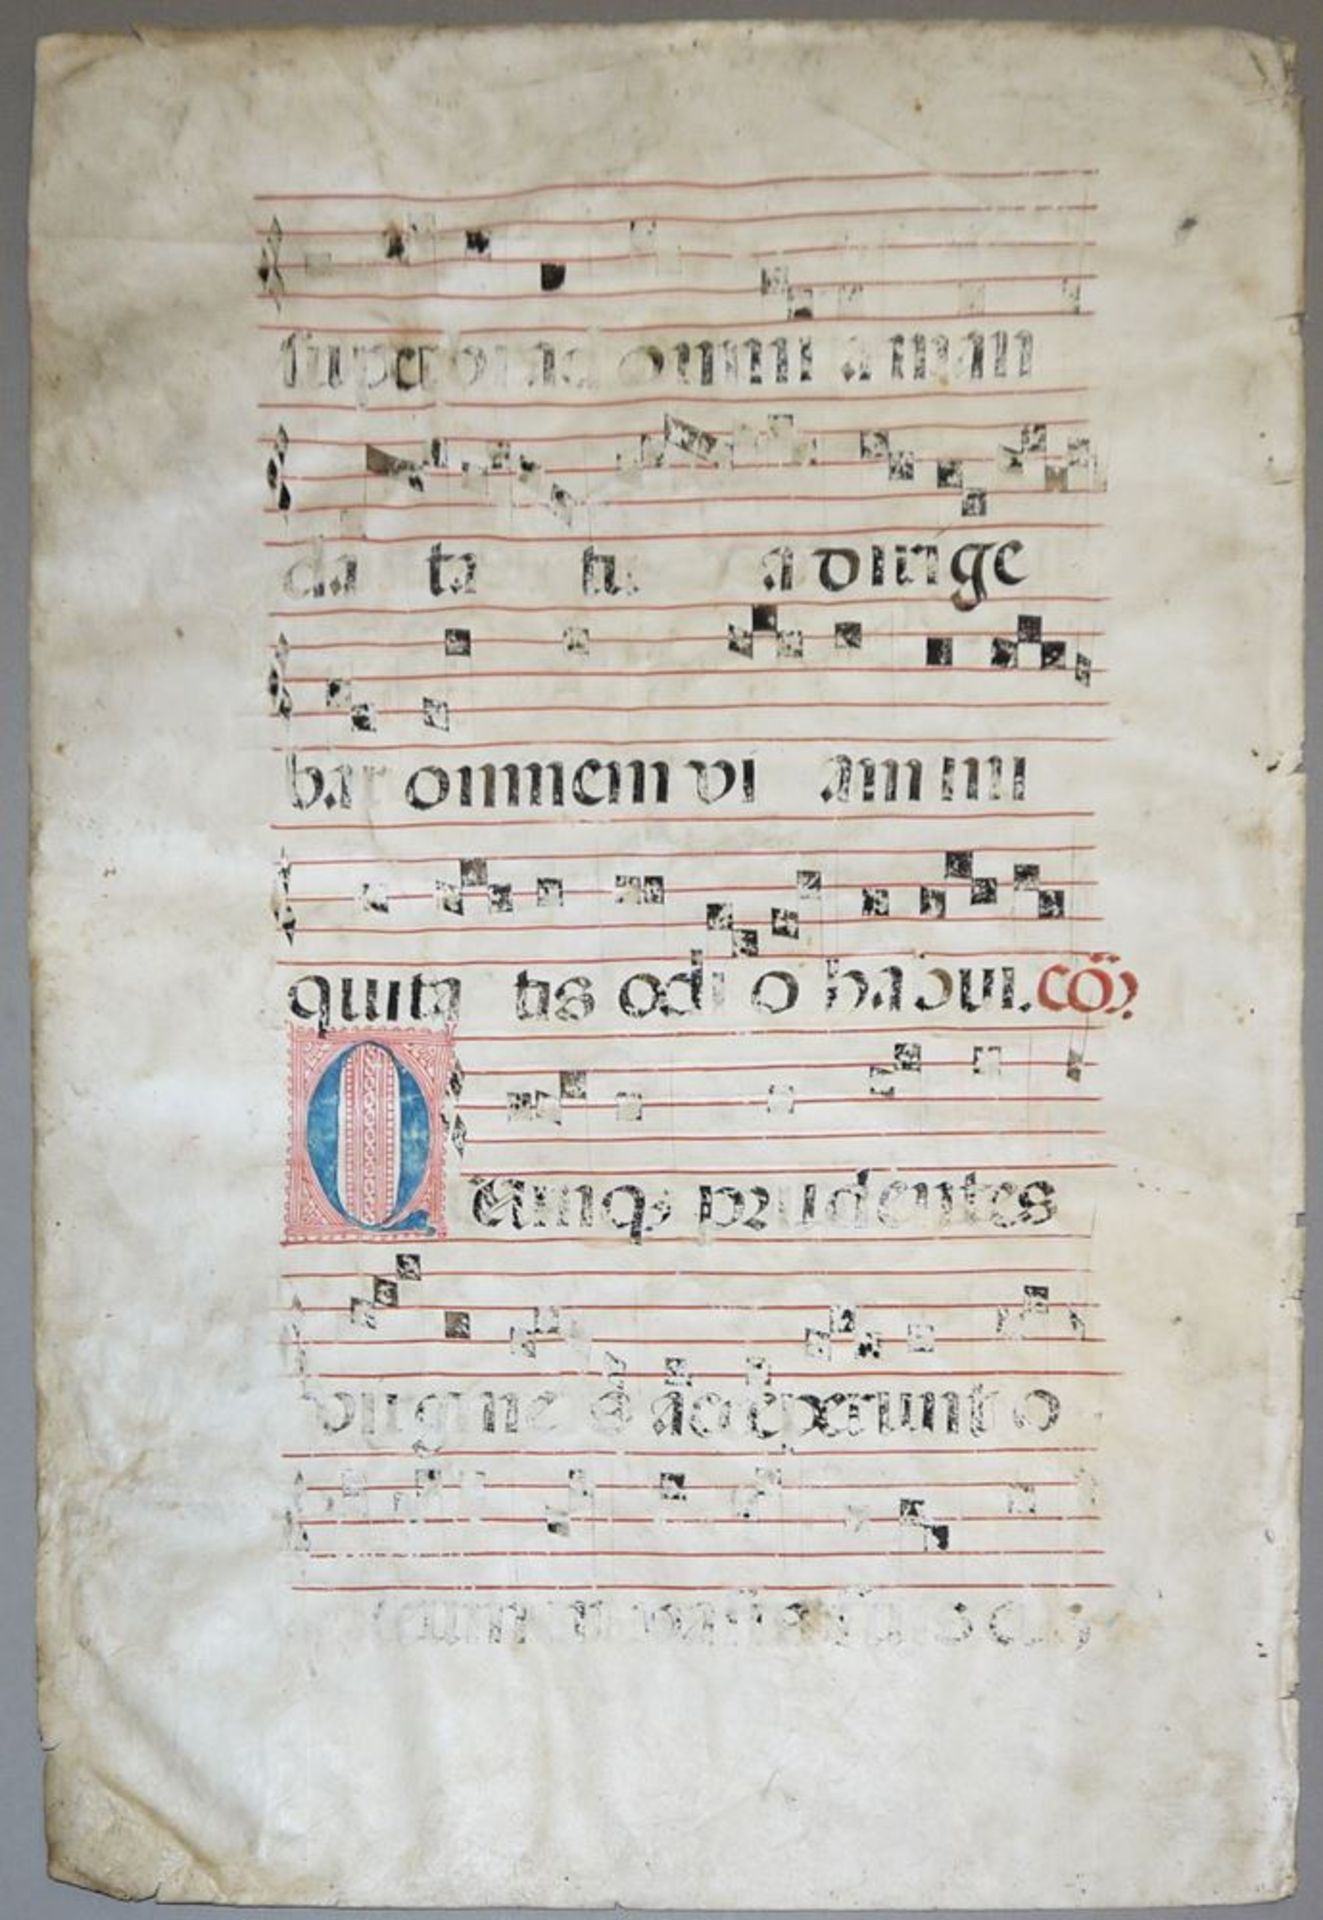 Antiphonarblatt mit Text und Noten in Rot und Schwarz auf Pergament um 1500 - Image 2 of 2